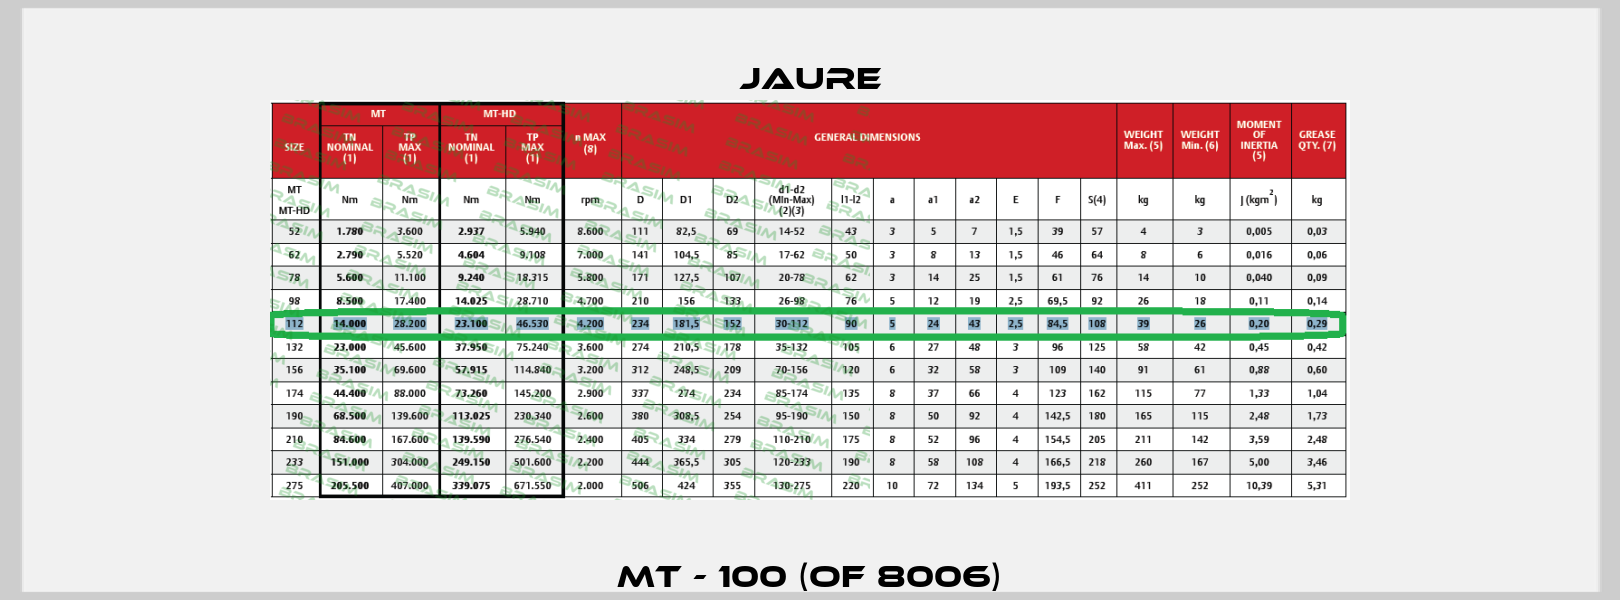 MT - 100 (OF 8006) Jaure